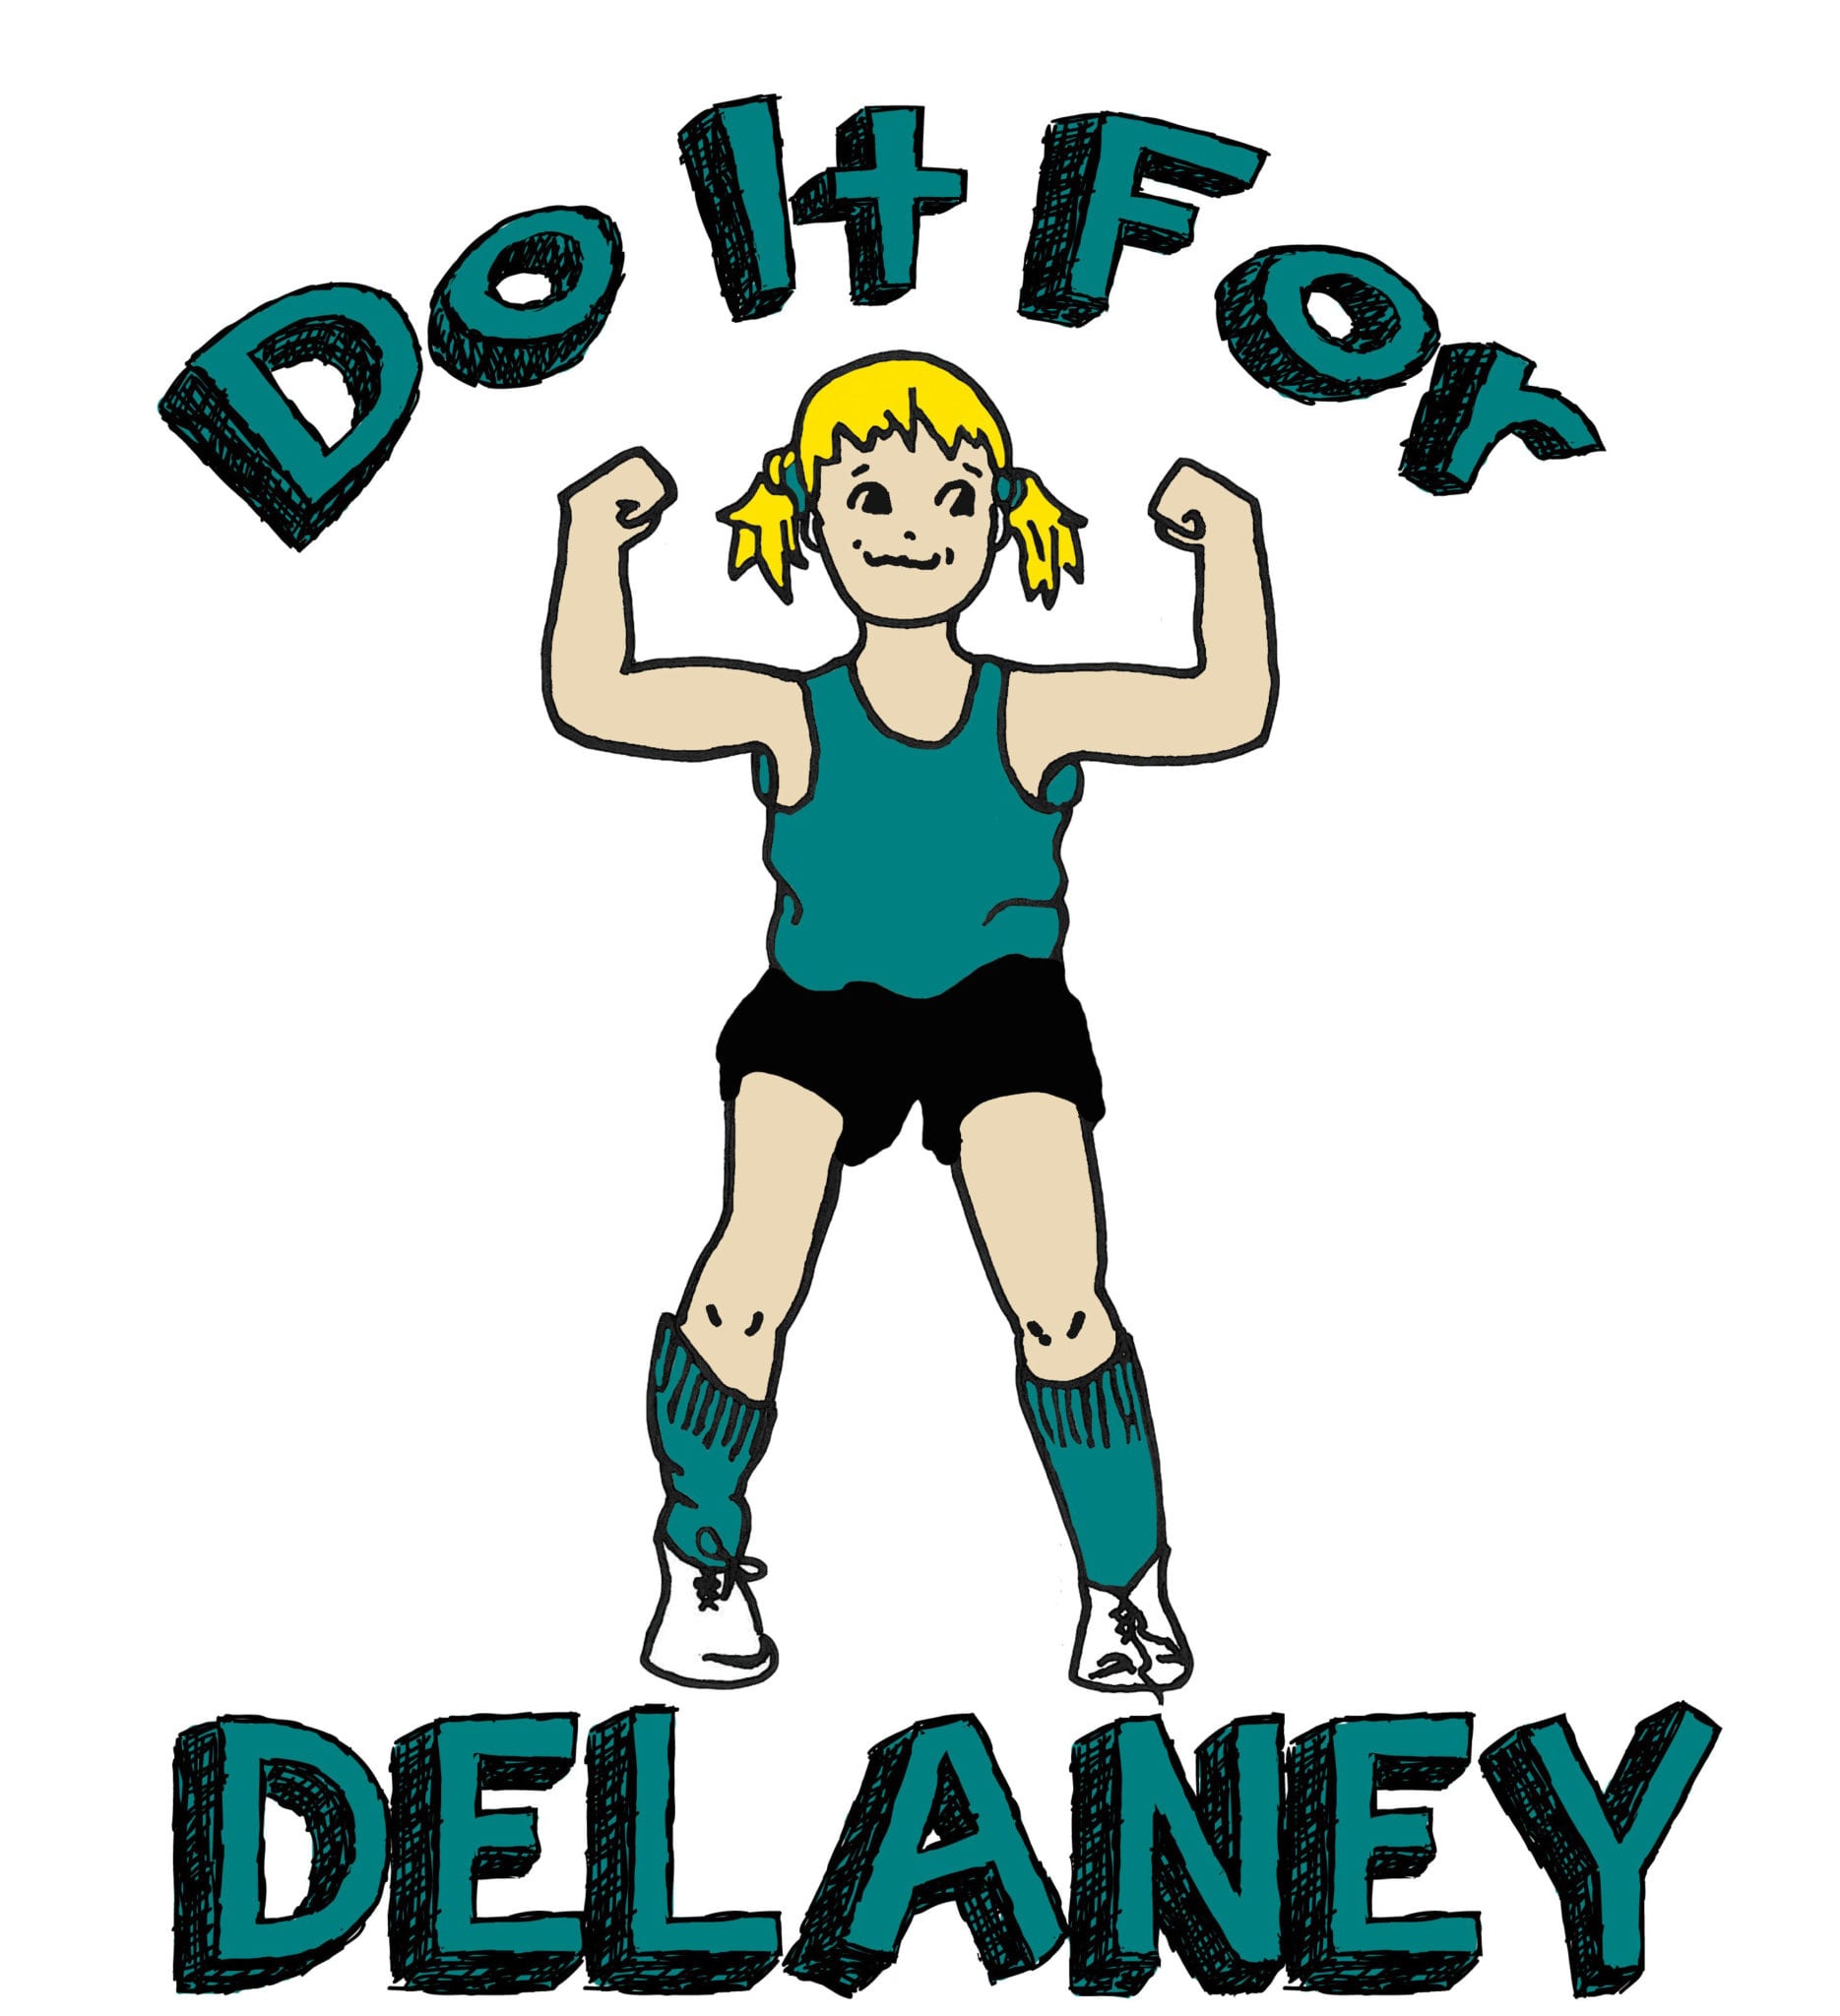 Do It For Delaney logo on RaceRaves